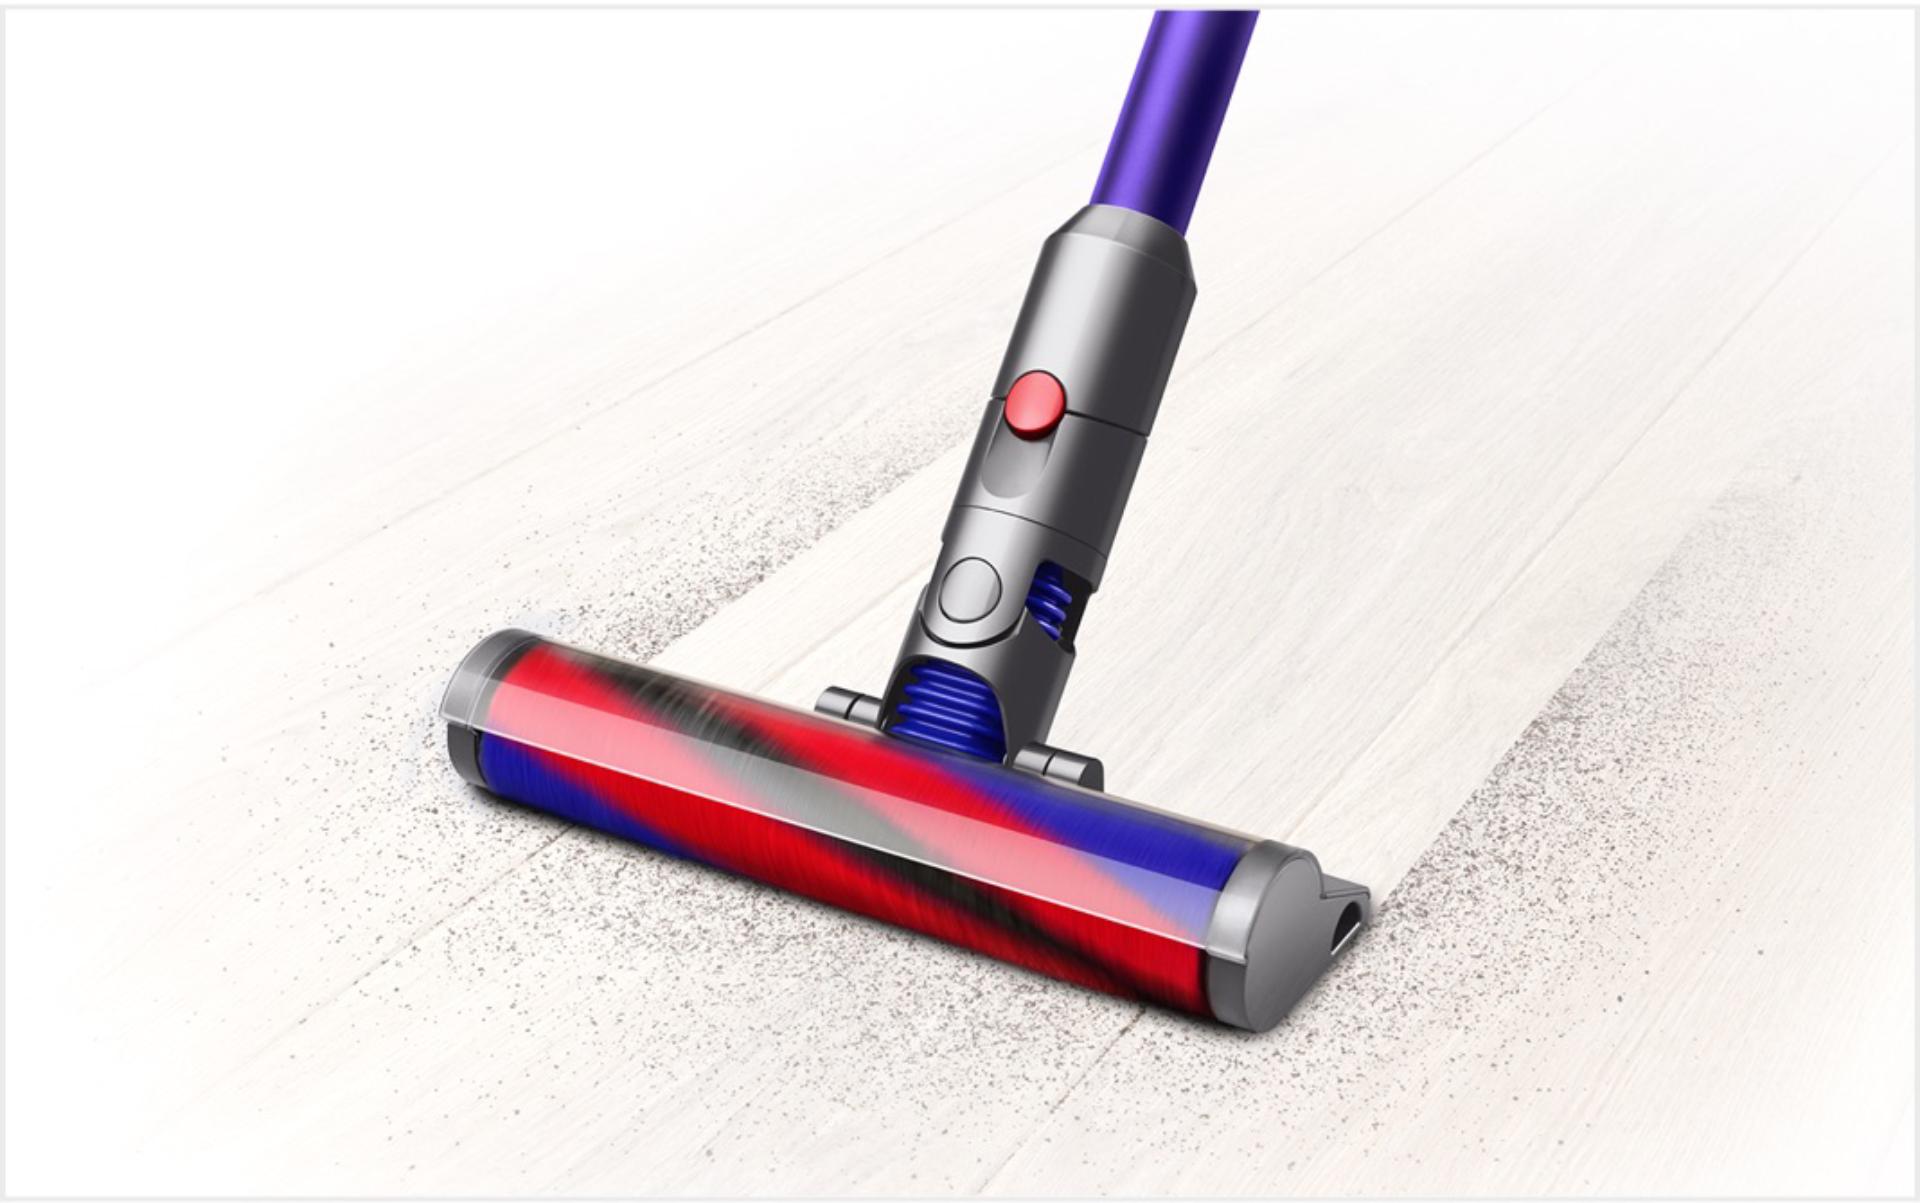 Hình ảnh máy Dyson Digital Slim™ đang làm sạch sàn.